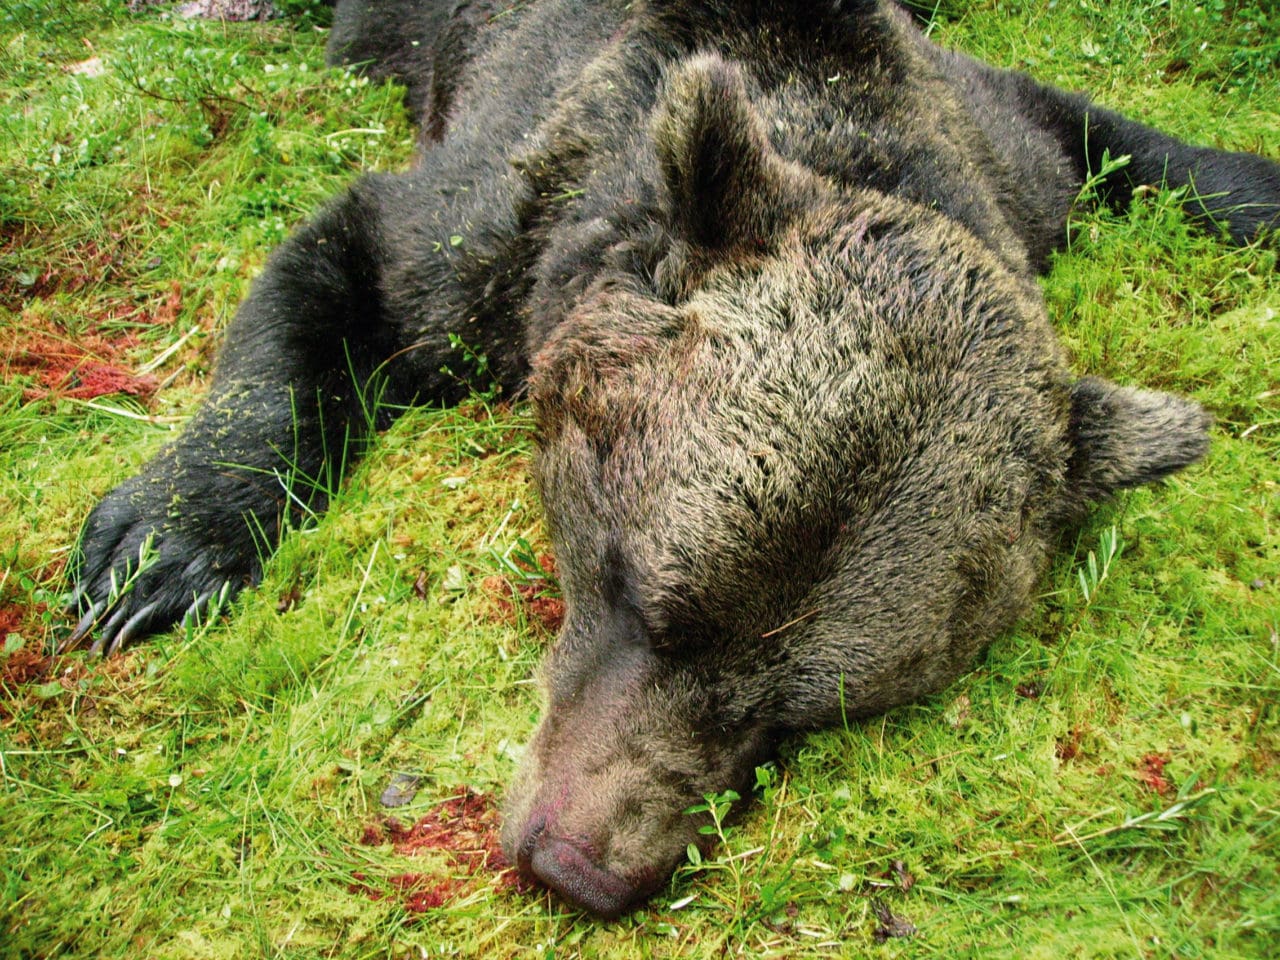 Björnarna ”surnade” på vägen till slakterierna. De fällda björnarna under 2006 års jakt fick flås först när de hade förts till ett godkänt slakteri. Nu vill länsstyrelsen i Norrbotten att de EU-anpassade reglerna ändras.